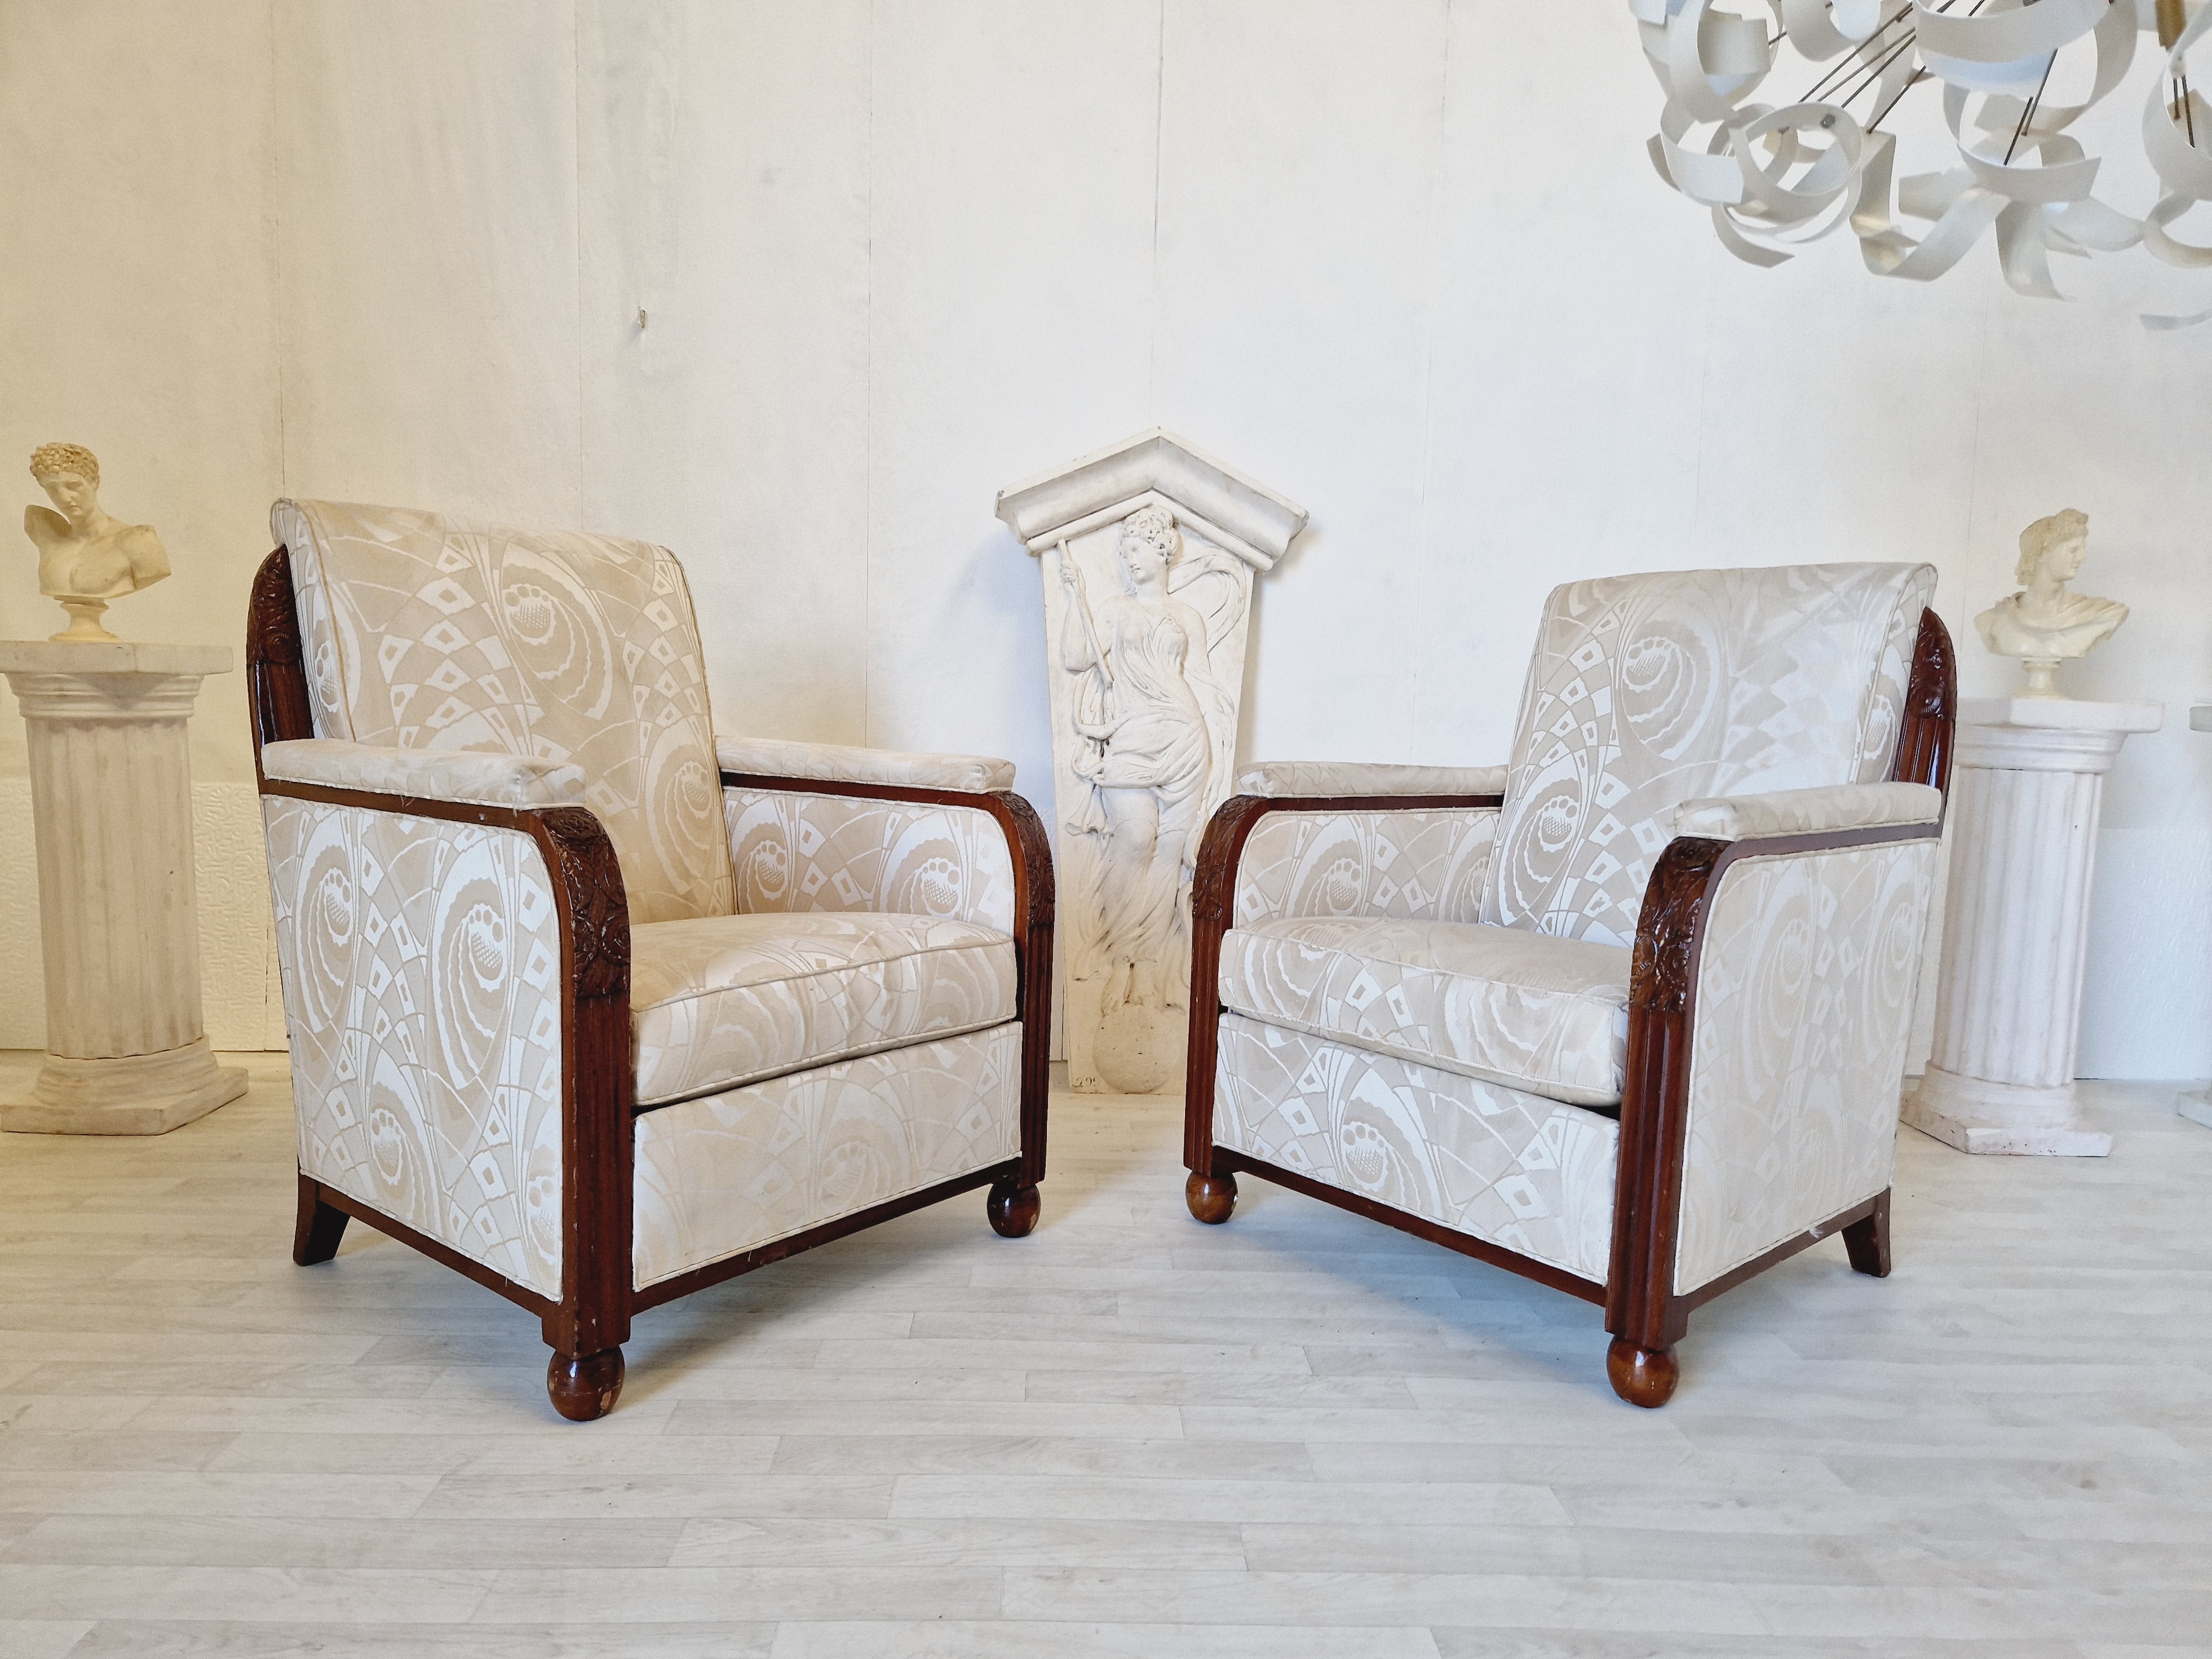 Cette paire de fauteuils Art Deco vintage date des années 1930 et présente un magnifique design cubique avec un revêtement blanc et une structure en noyer. Cet ensemble comprend deux chaises en noyer et revêtues d'un tissu de type synthétique